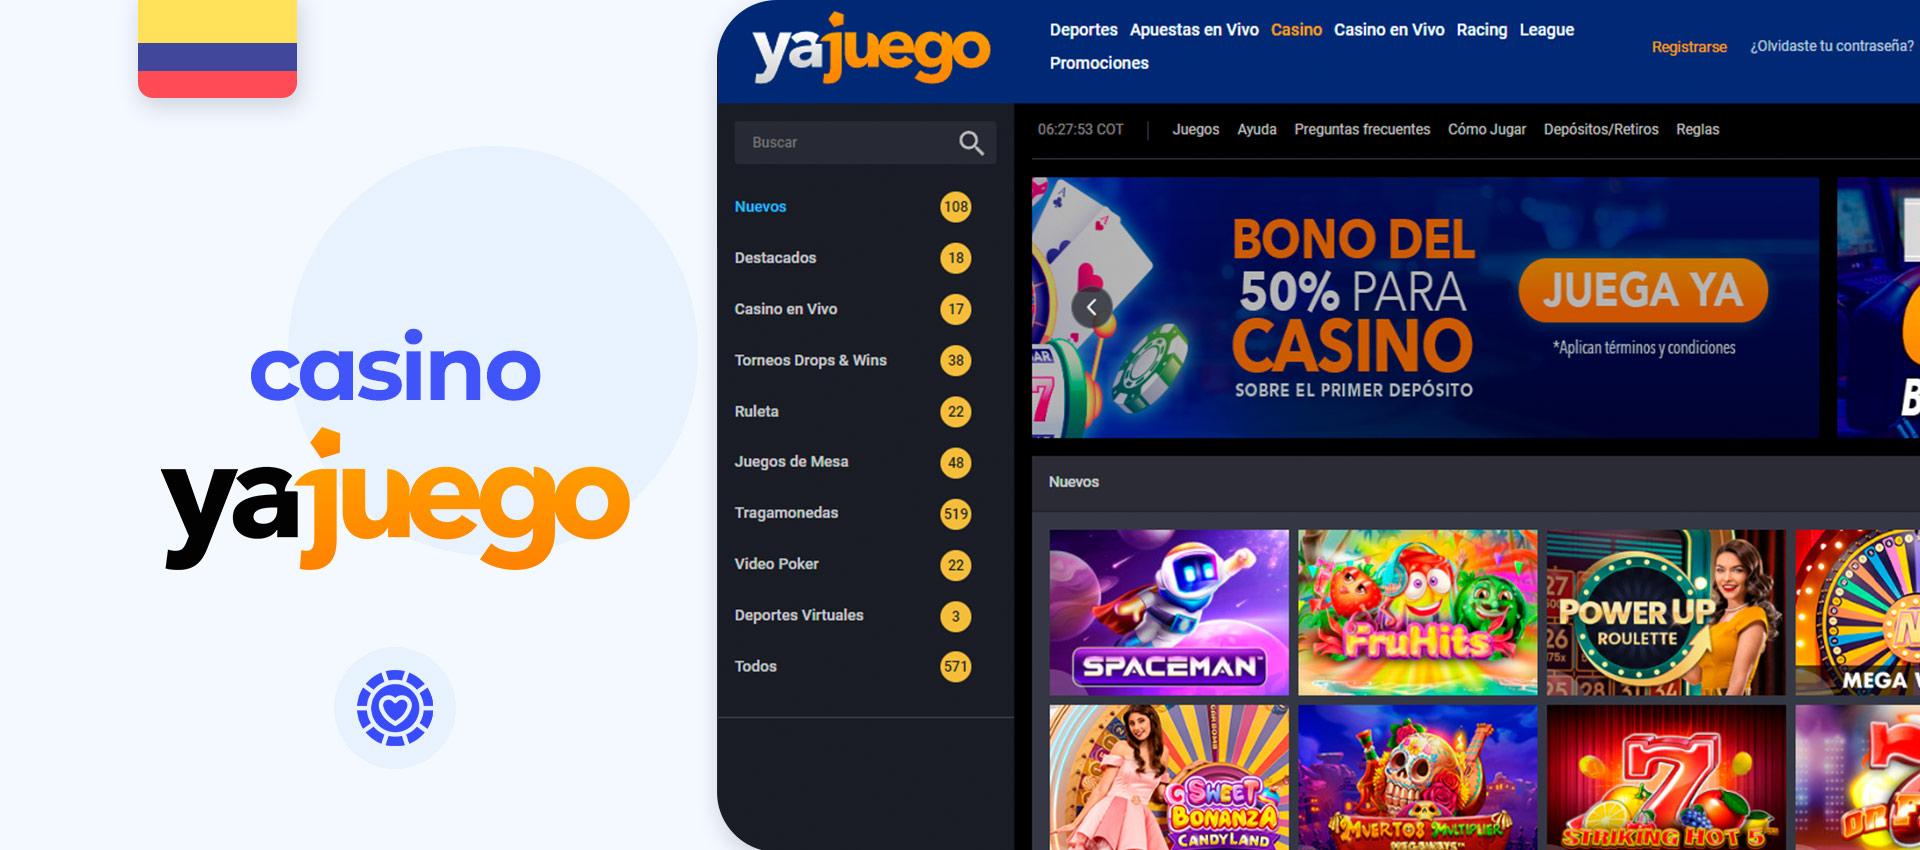 Casino en línea Yajuego